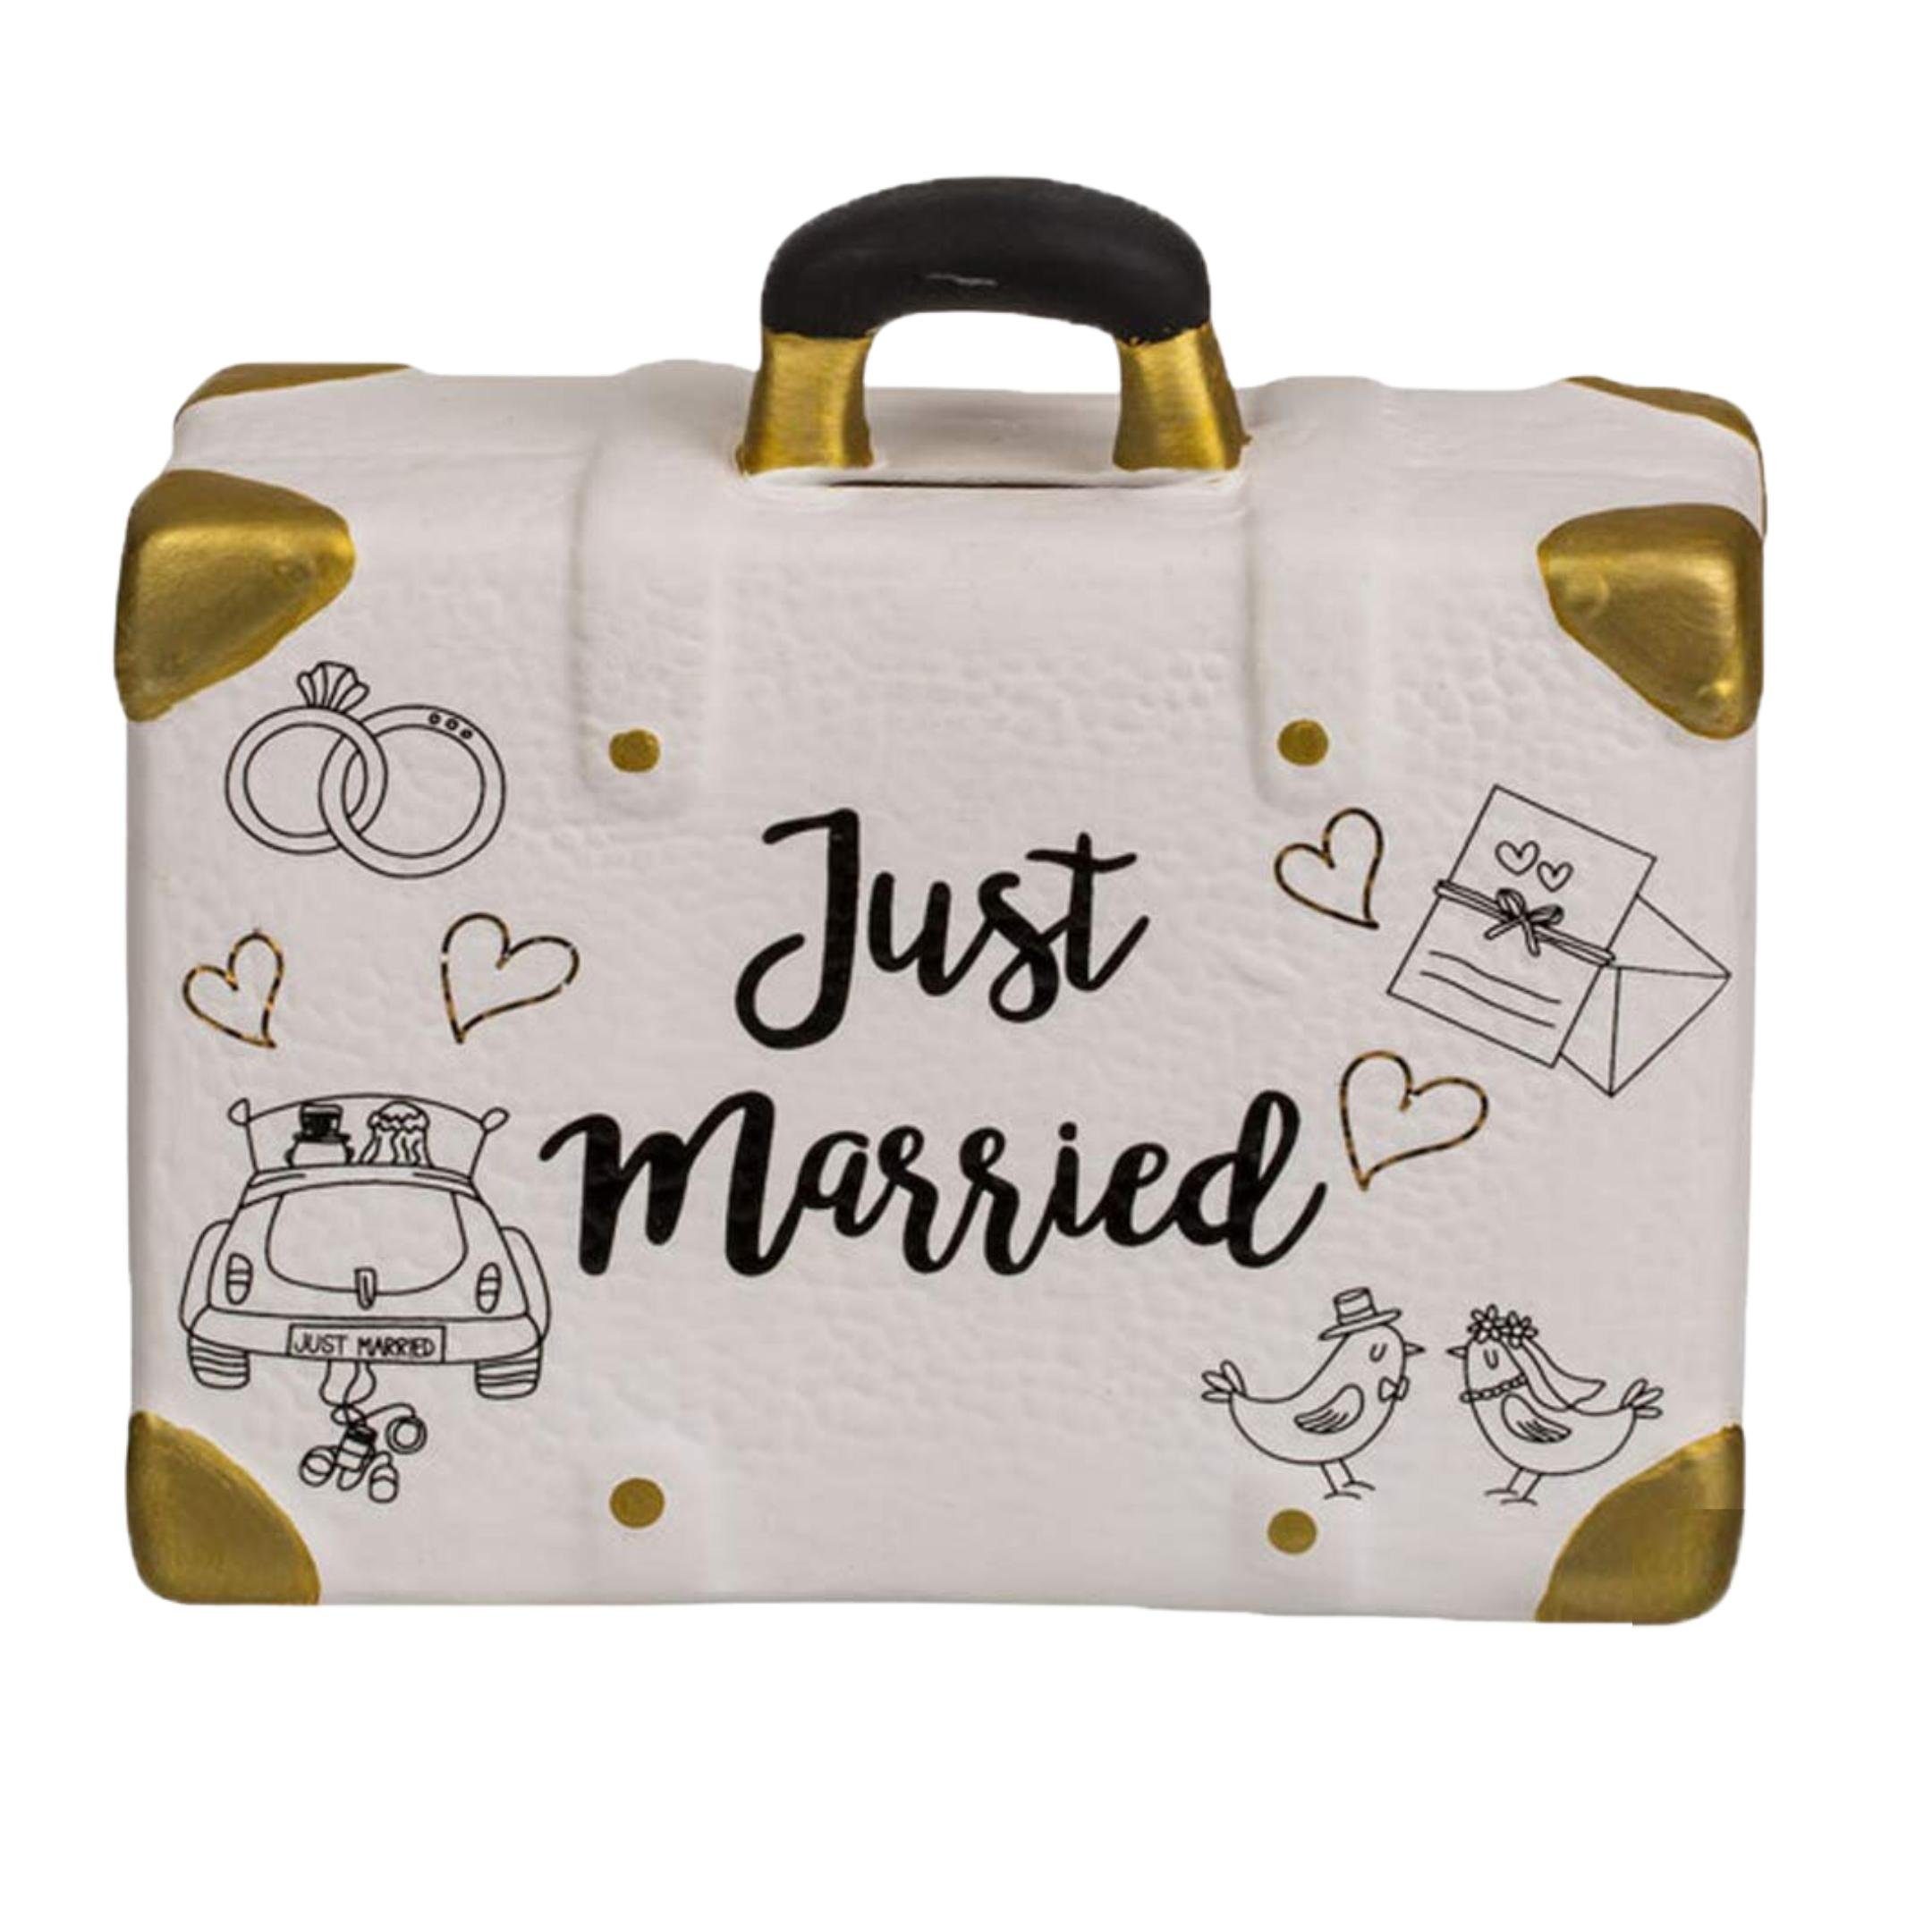 Bada Bing Spardose Spardose Hochzeitskoffer Koffer Just Married,  Hochzeitsgeschenk